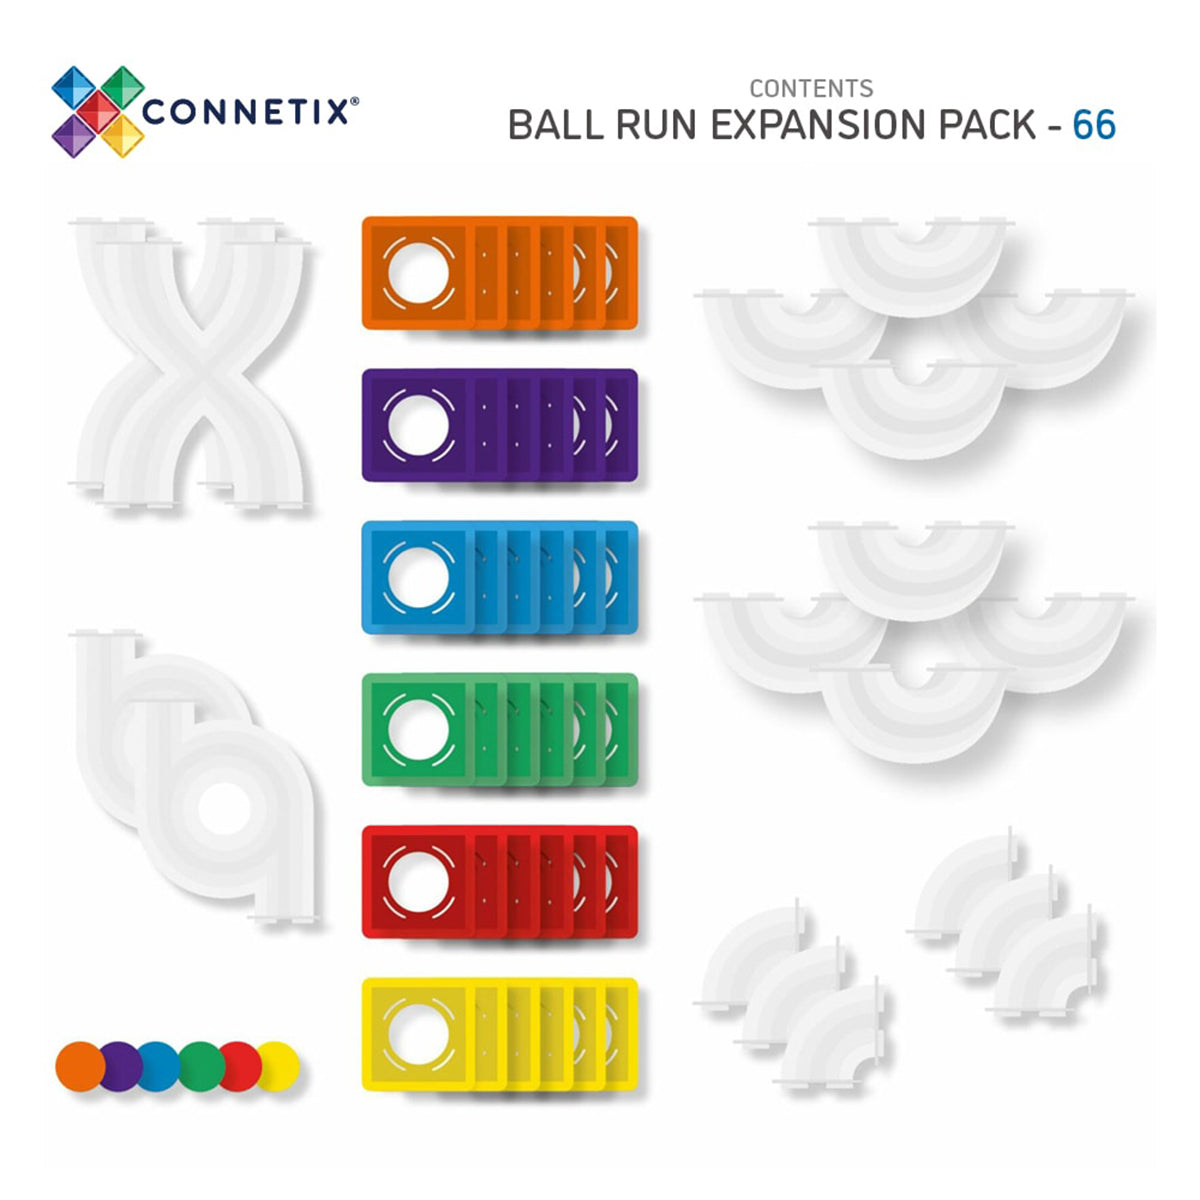 Bereid je voor op uren speelplezier met deze fantastische Connetix rainbow ball run expension pack 66 stuks! Deze set bevat nieuwe exclusieve bouwstukken en coole buizen waarmee het bouwen van parcours nog veel leuker wordt! VanZus